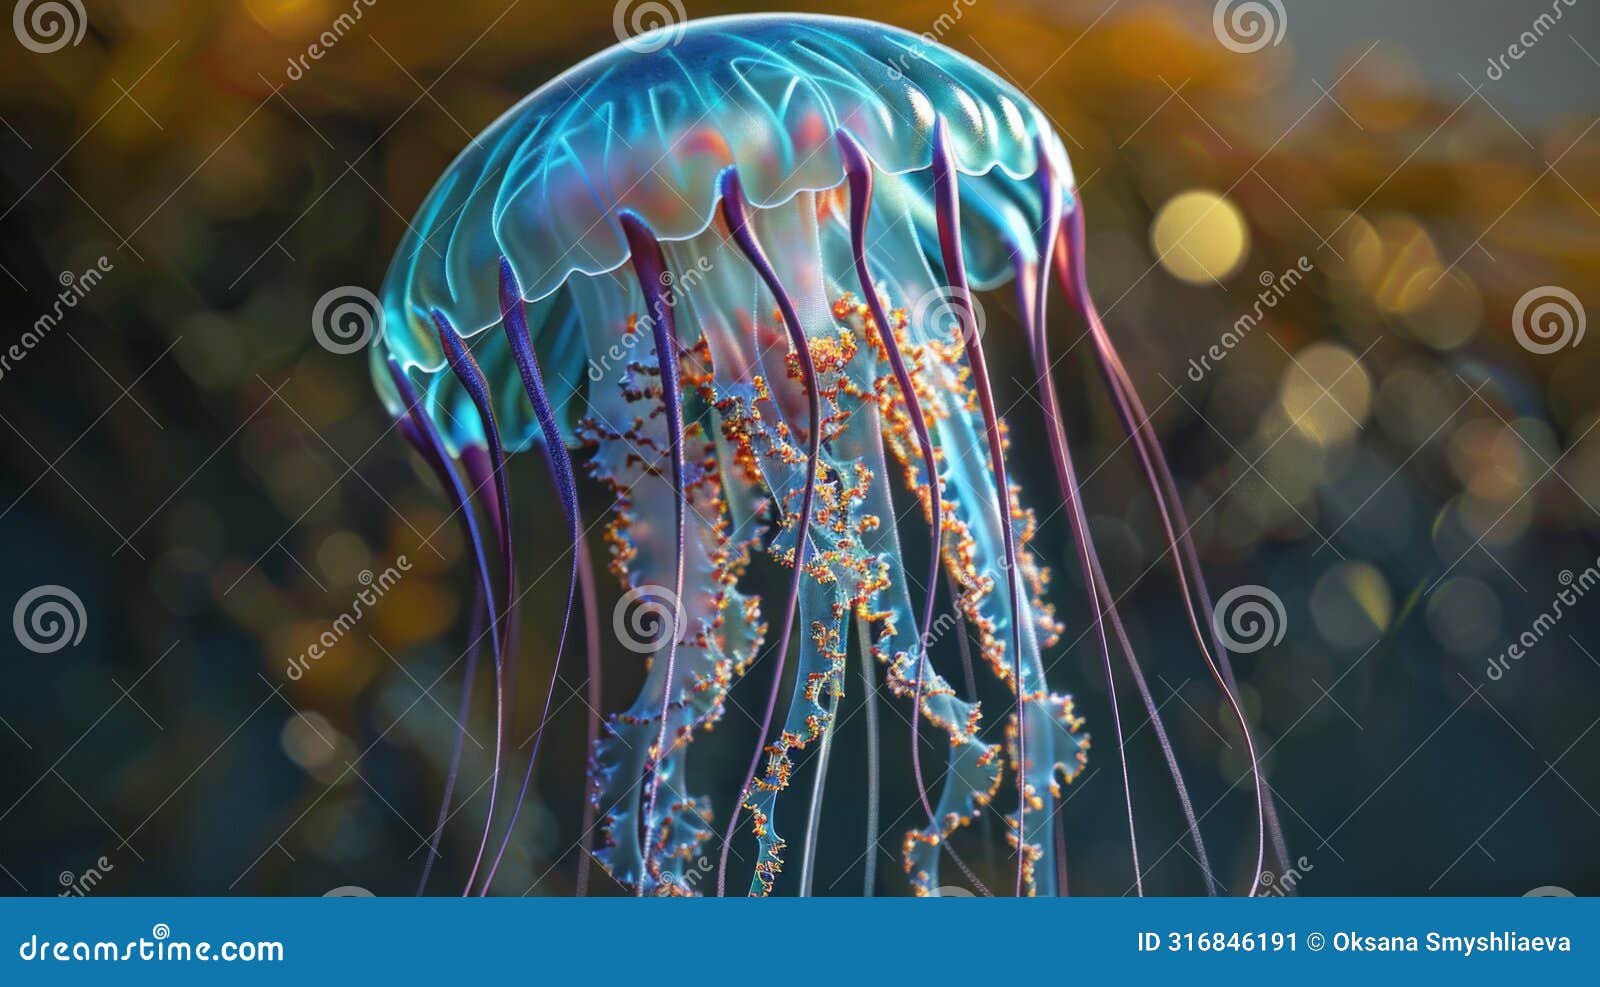 luminous jellyfish in deep sea - serene underwater wildlife photography